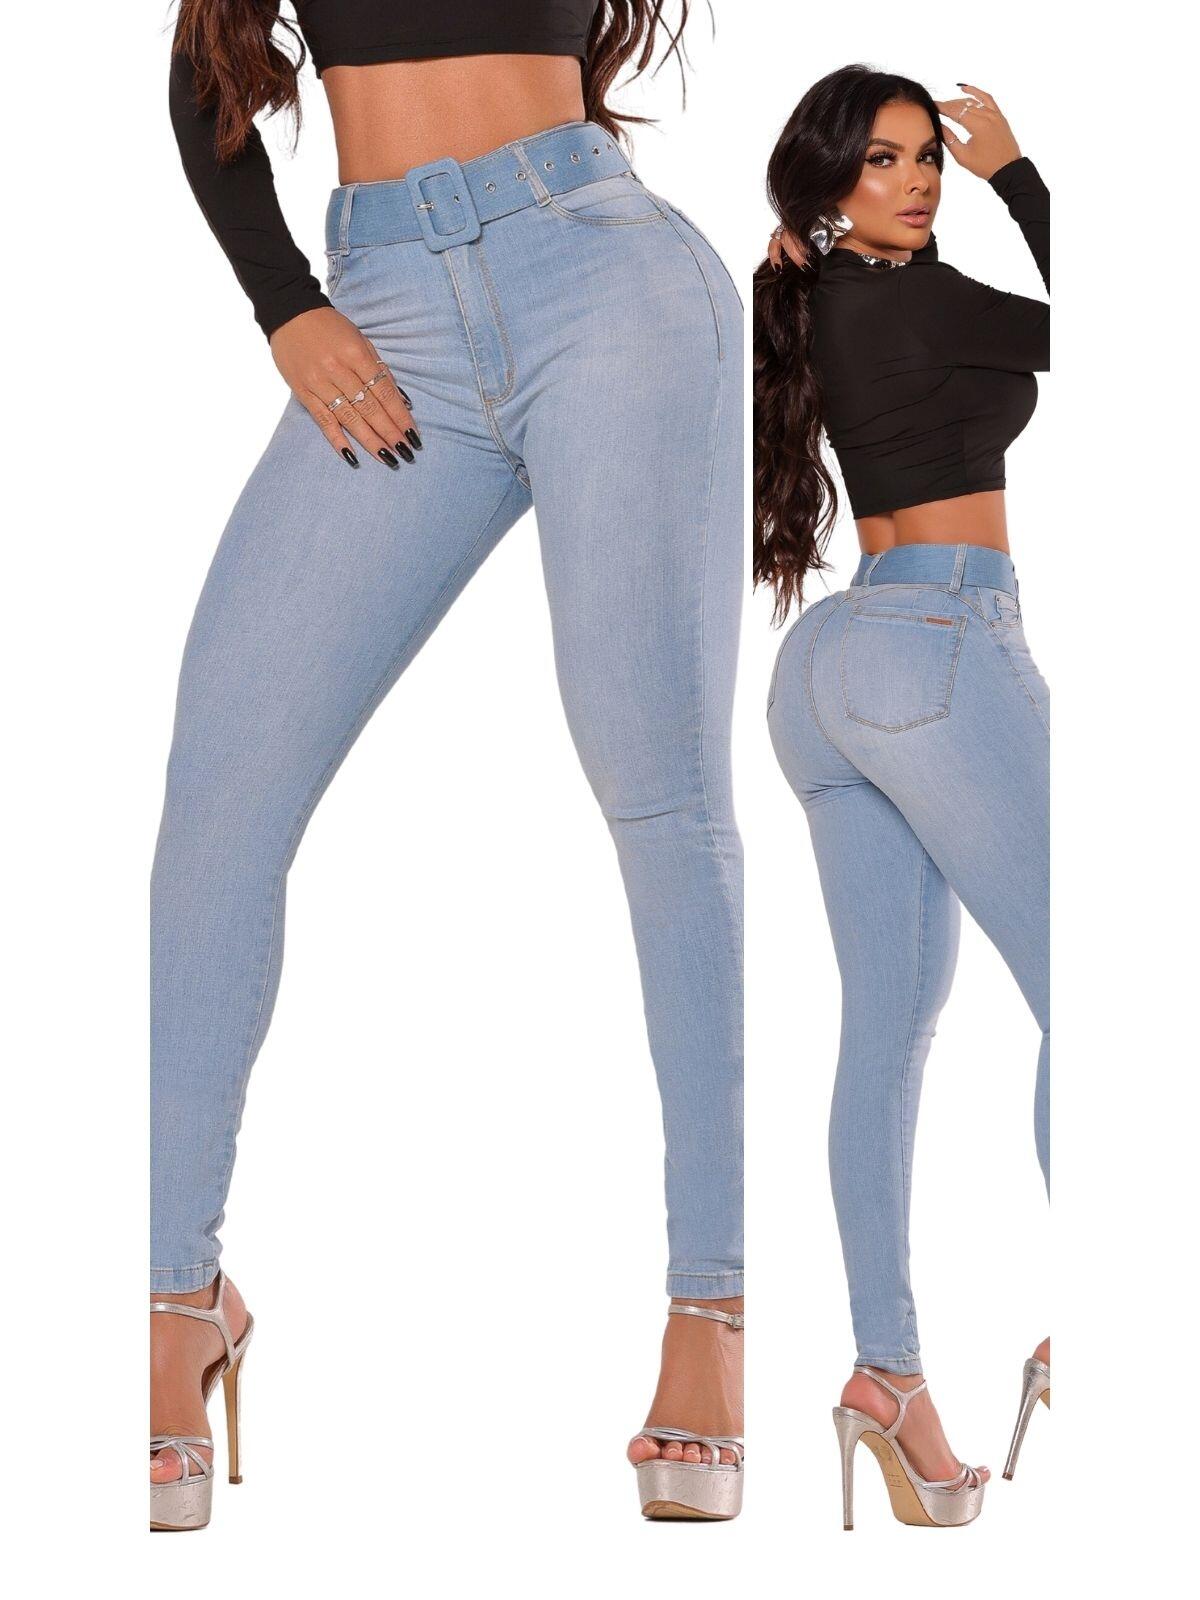 Comprar Calça Jeans Feminina Cinto e Bojo modela aumenta Bumbum - Loyal  Denim